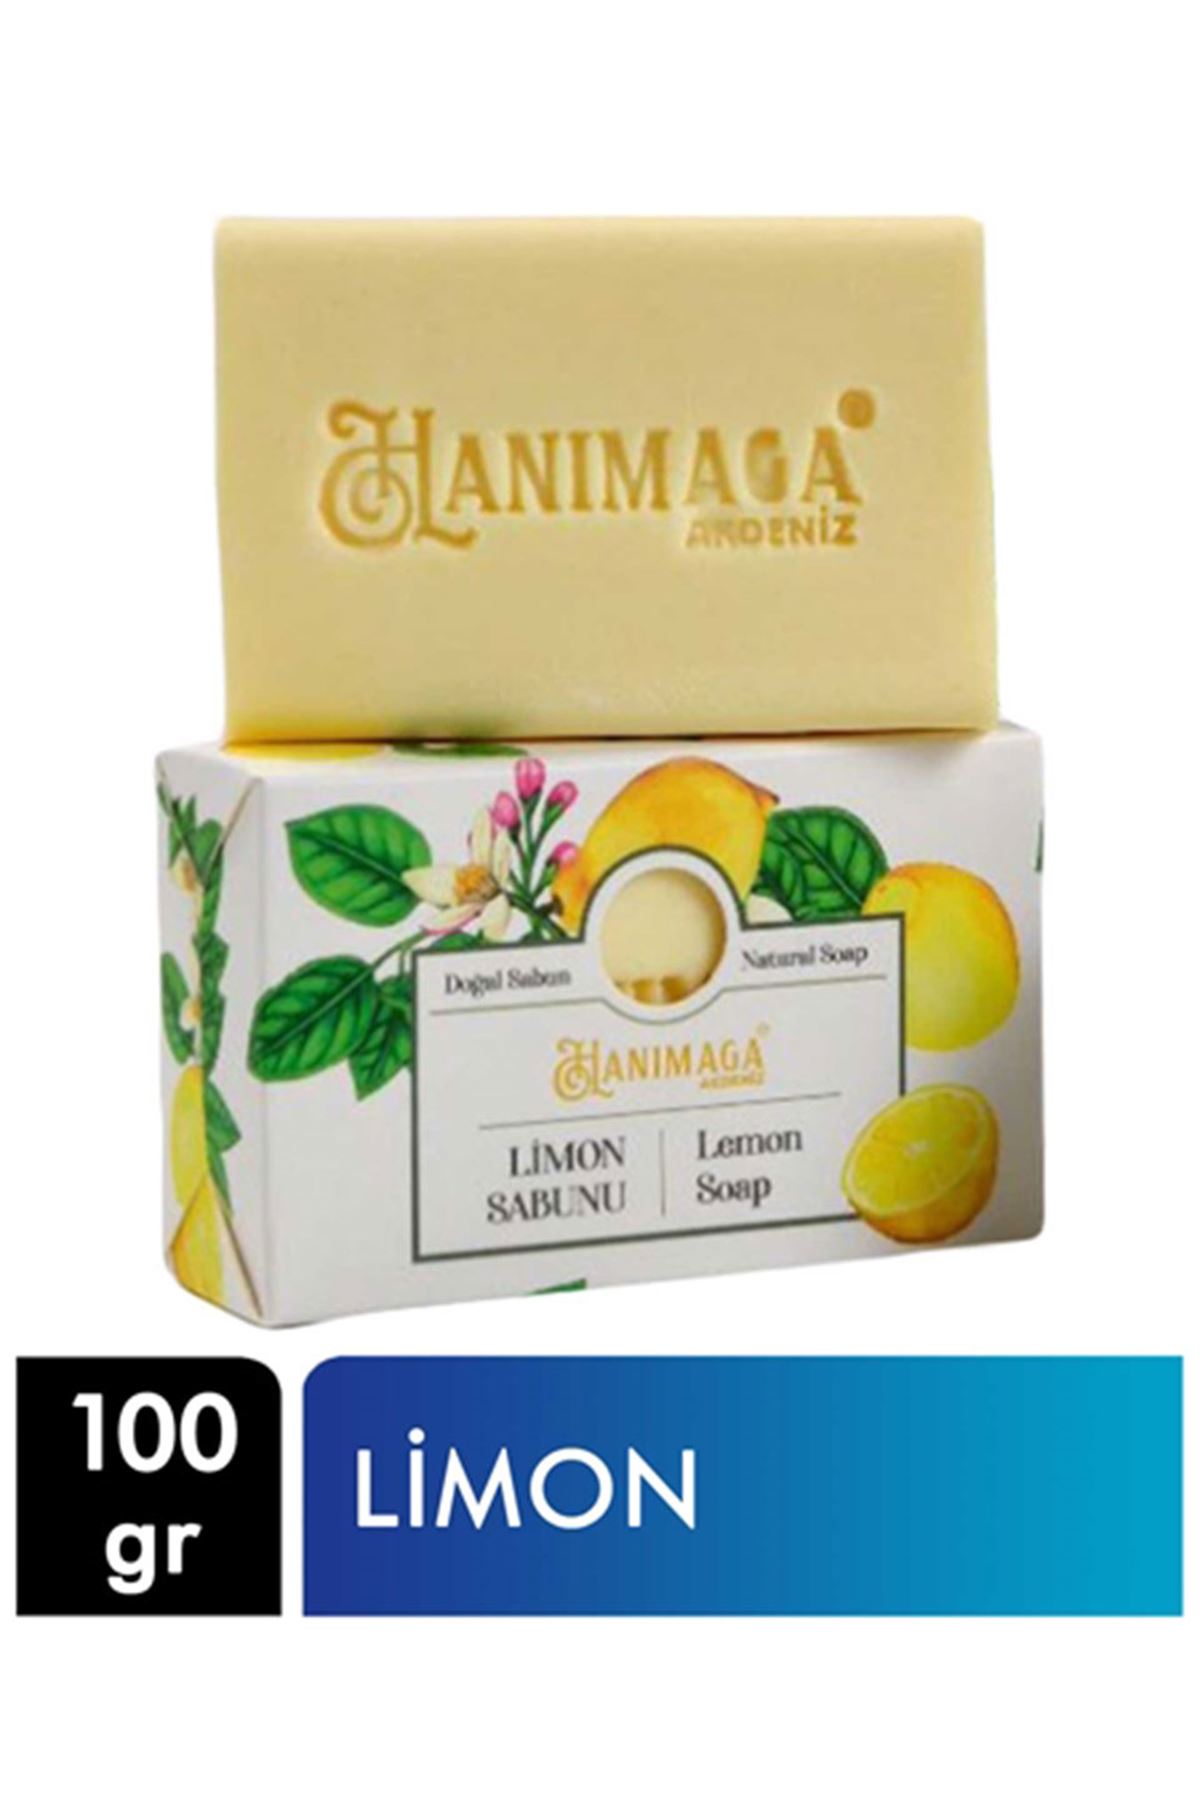 Hanımağa Doğal Sabun 100 g  Limon